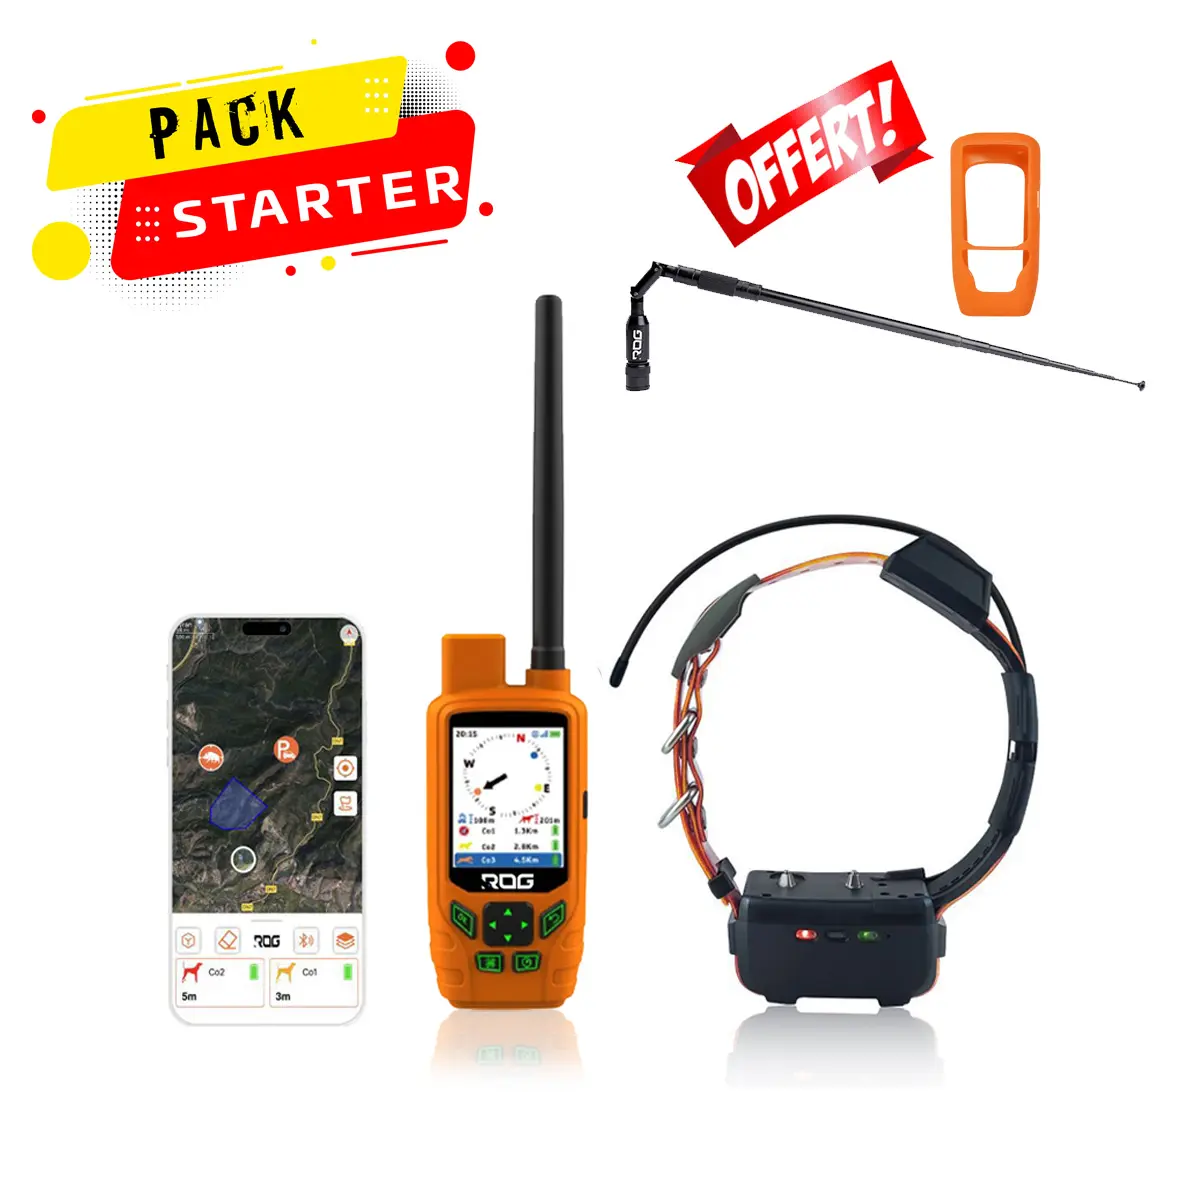 Cane di monitoraggio GPS ibrido GSM e VHF RoG caccia